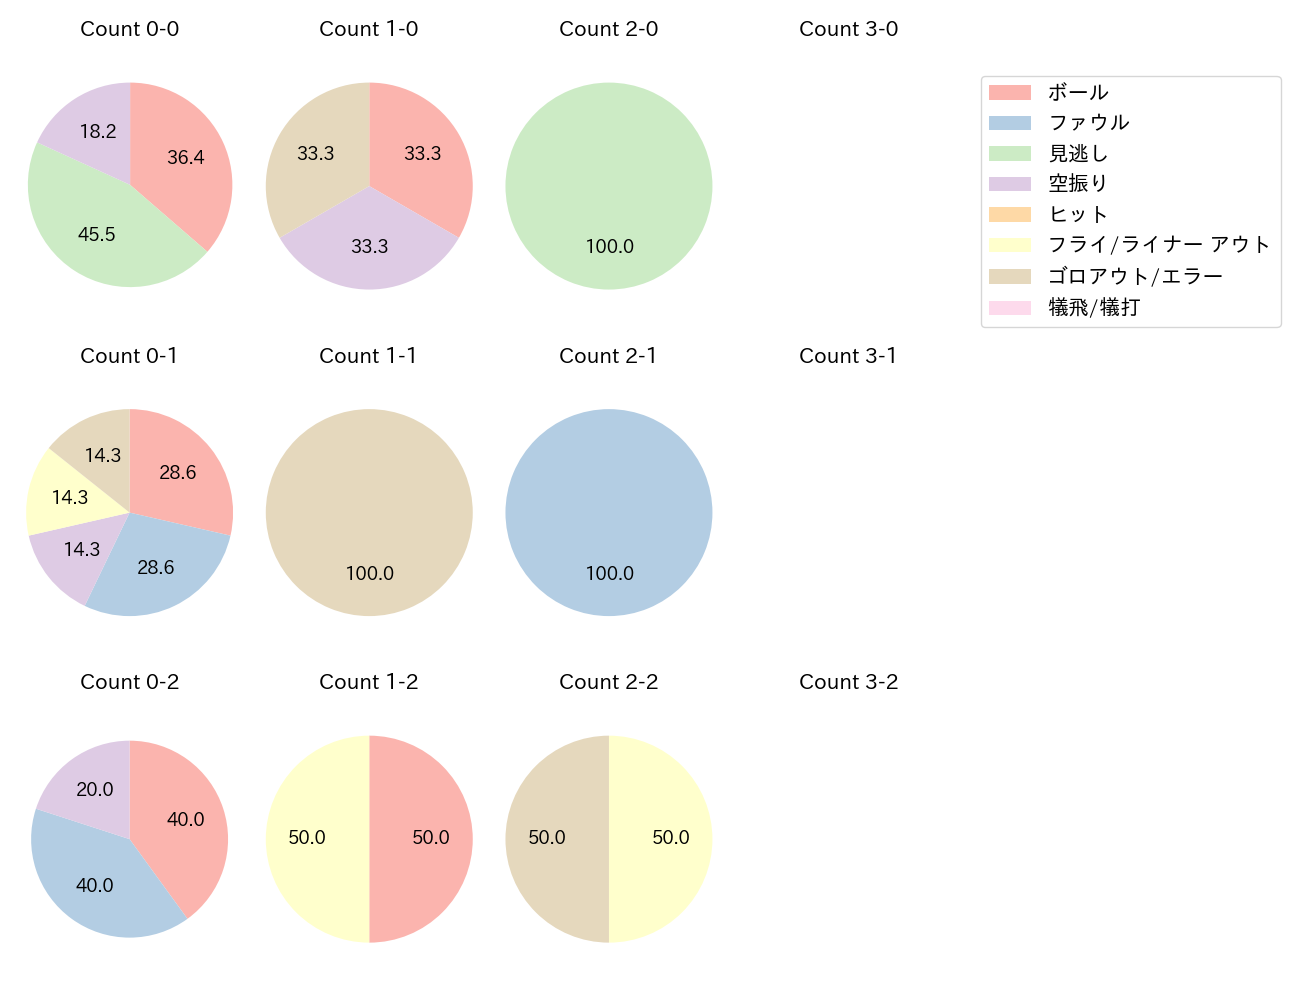 吉川 尚輝の球数分布(2021年3月)